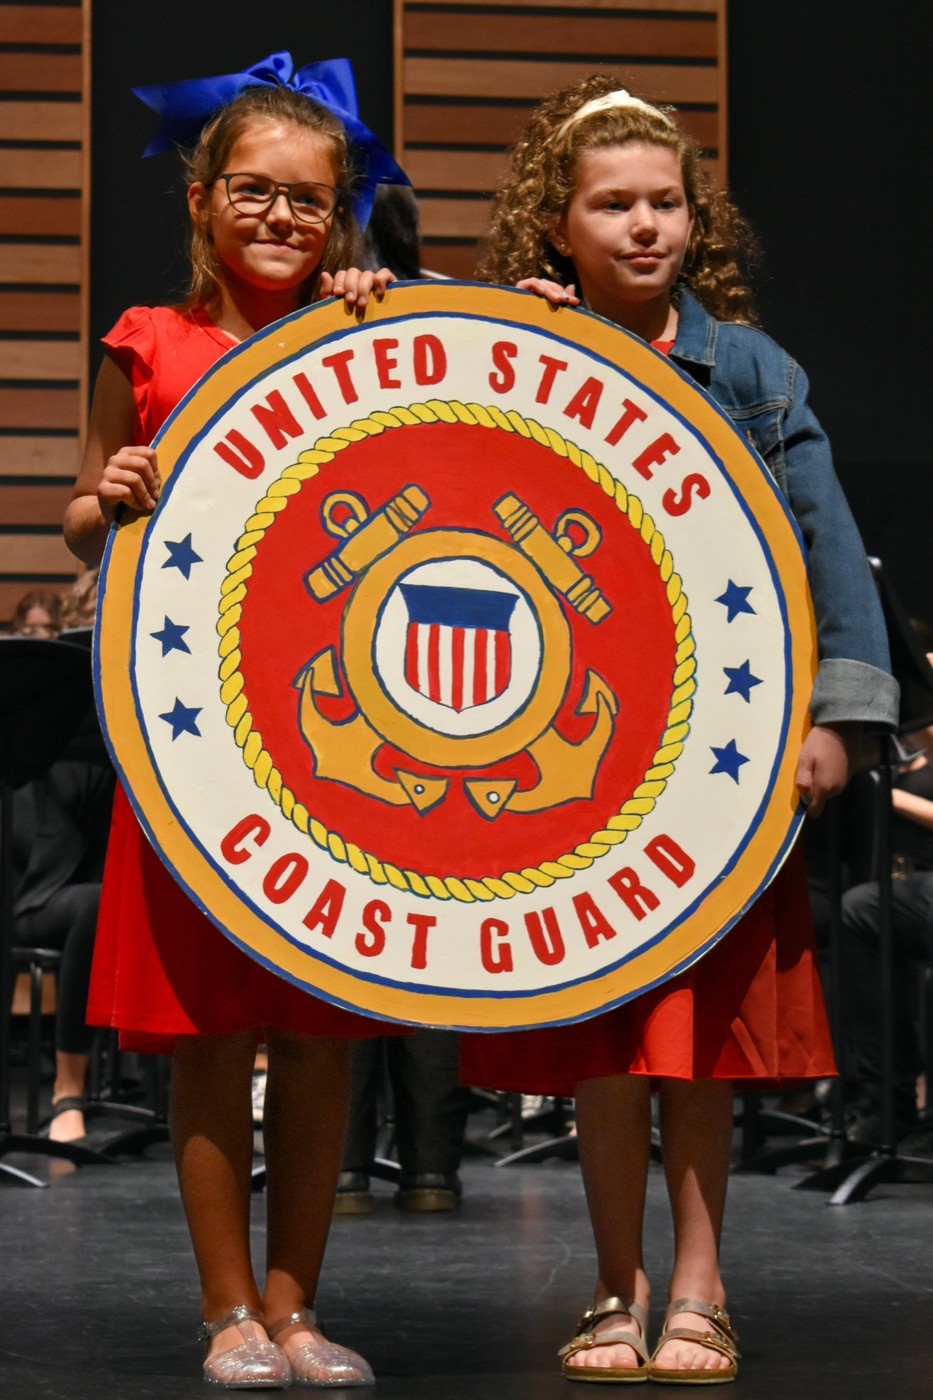 US Coast Guard emblem